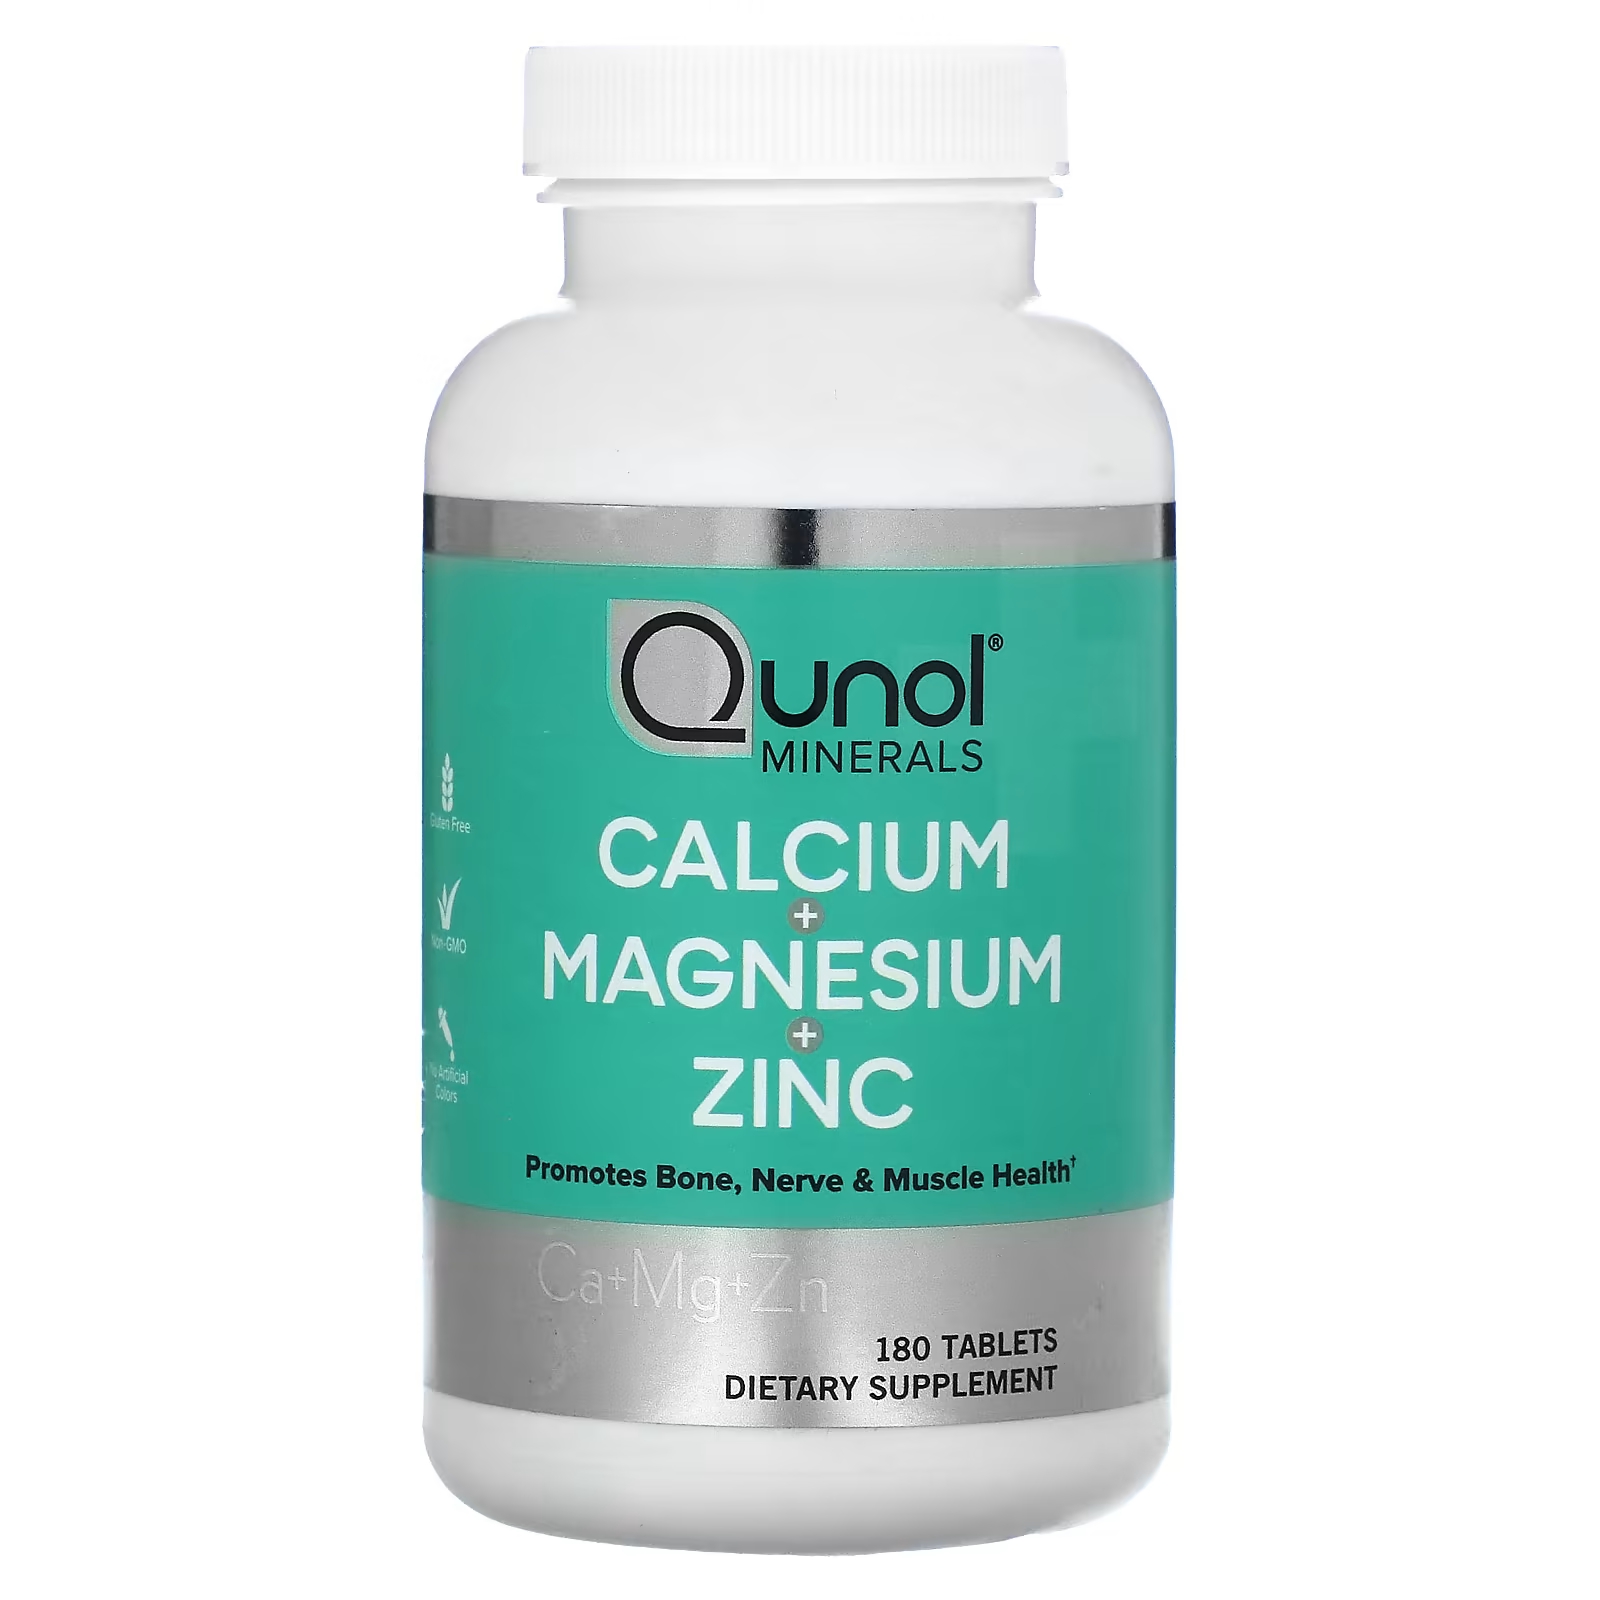 Пищевая добавка Qunol Calcium Magnesium Zinc, 180 таблеток